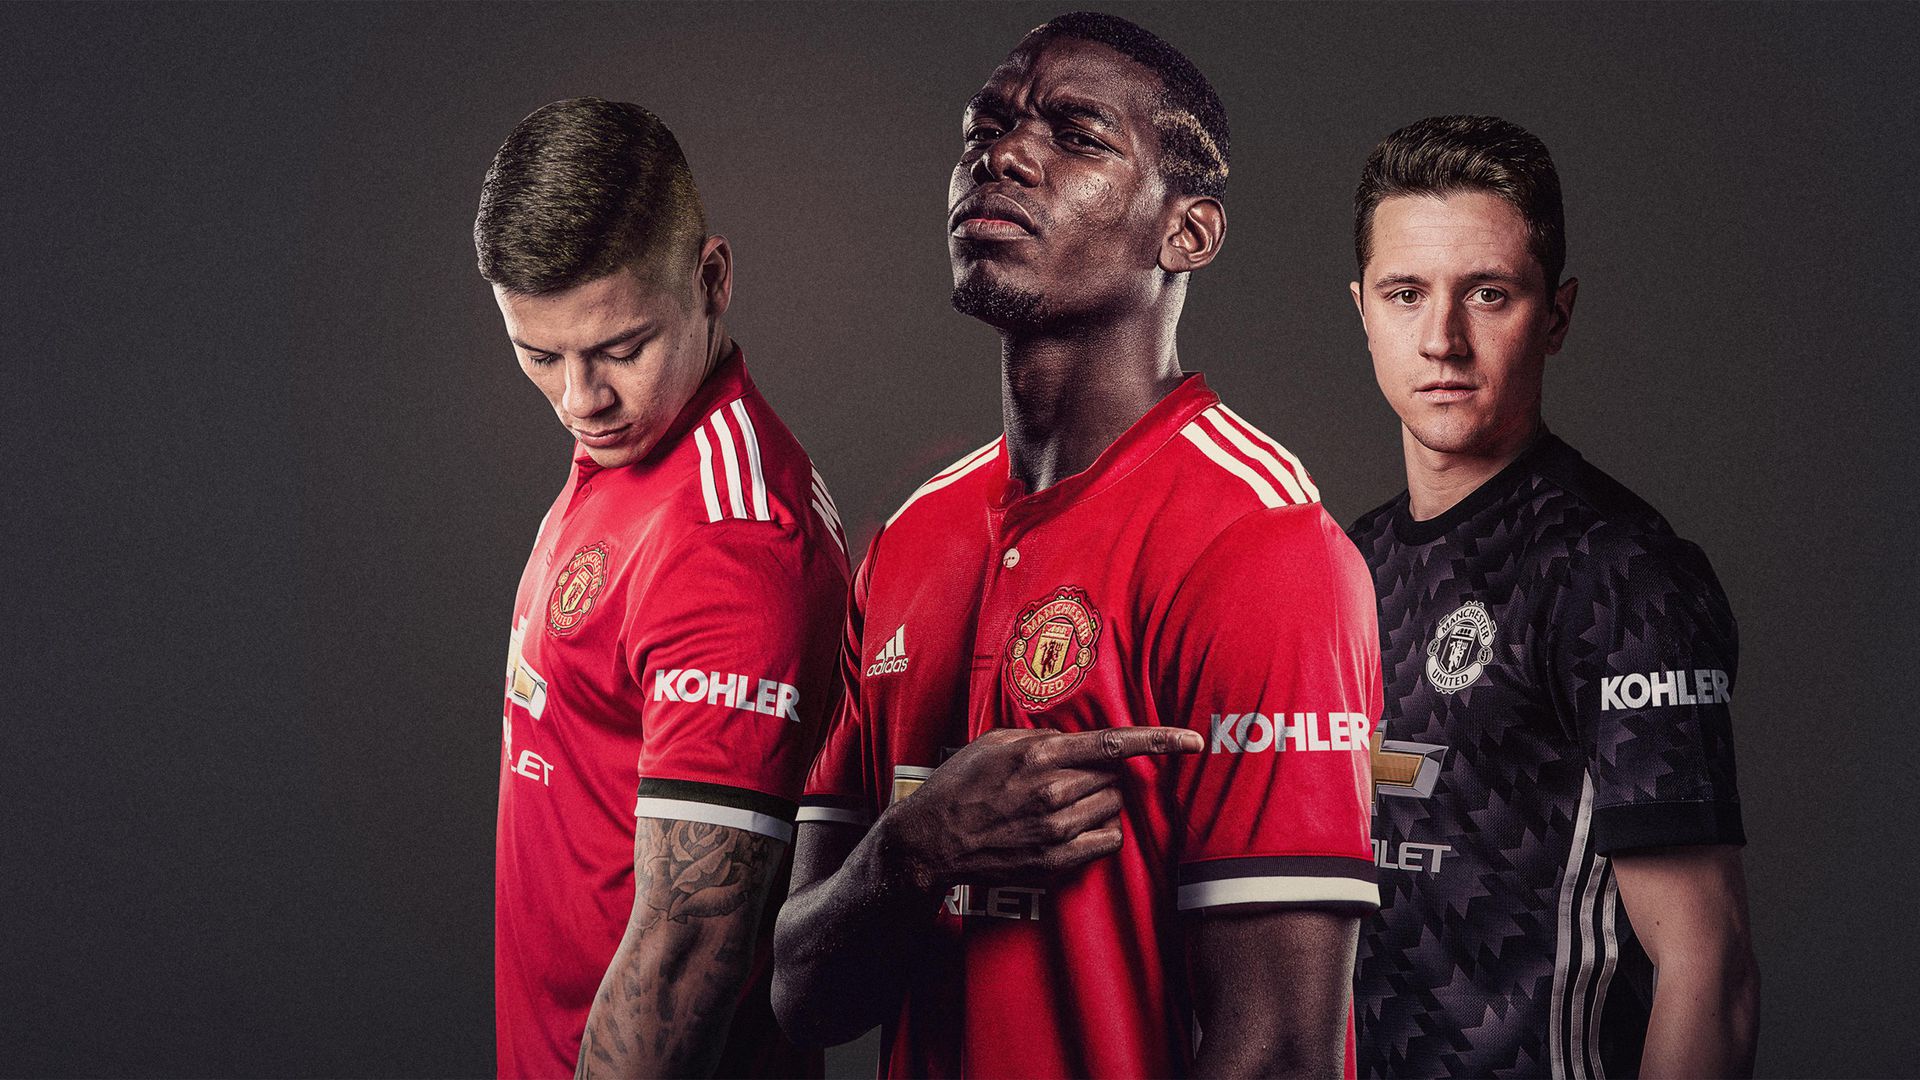 Kohler Sponsor Manchester United , HD Wallpaper & Backgrounds